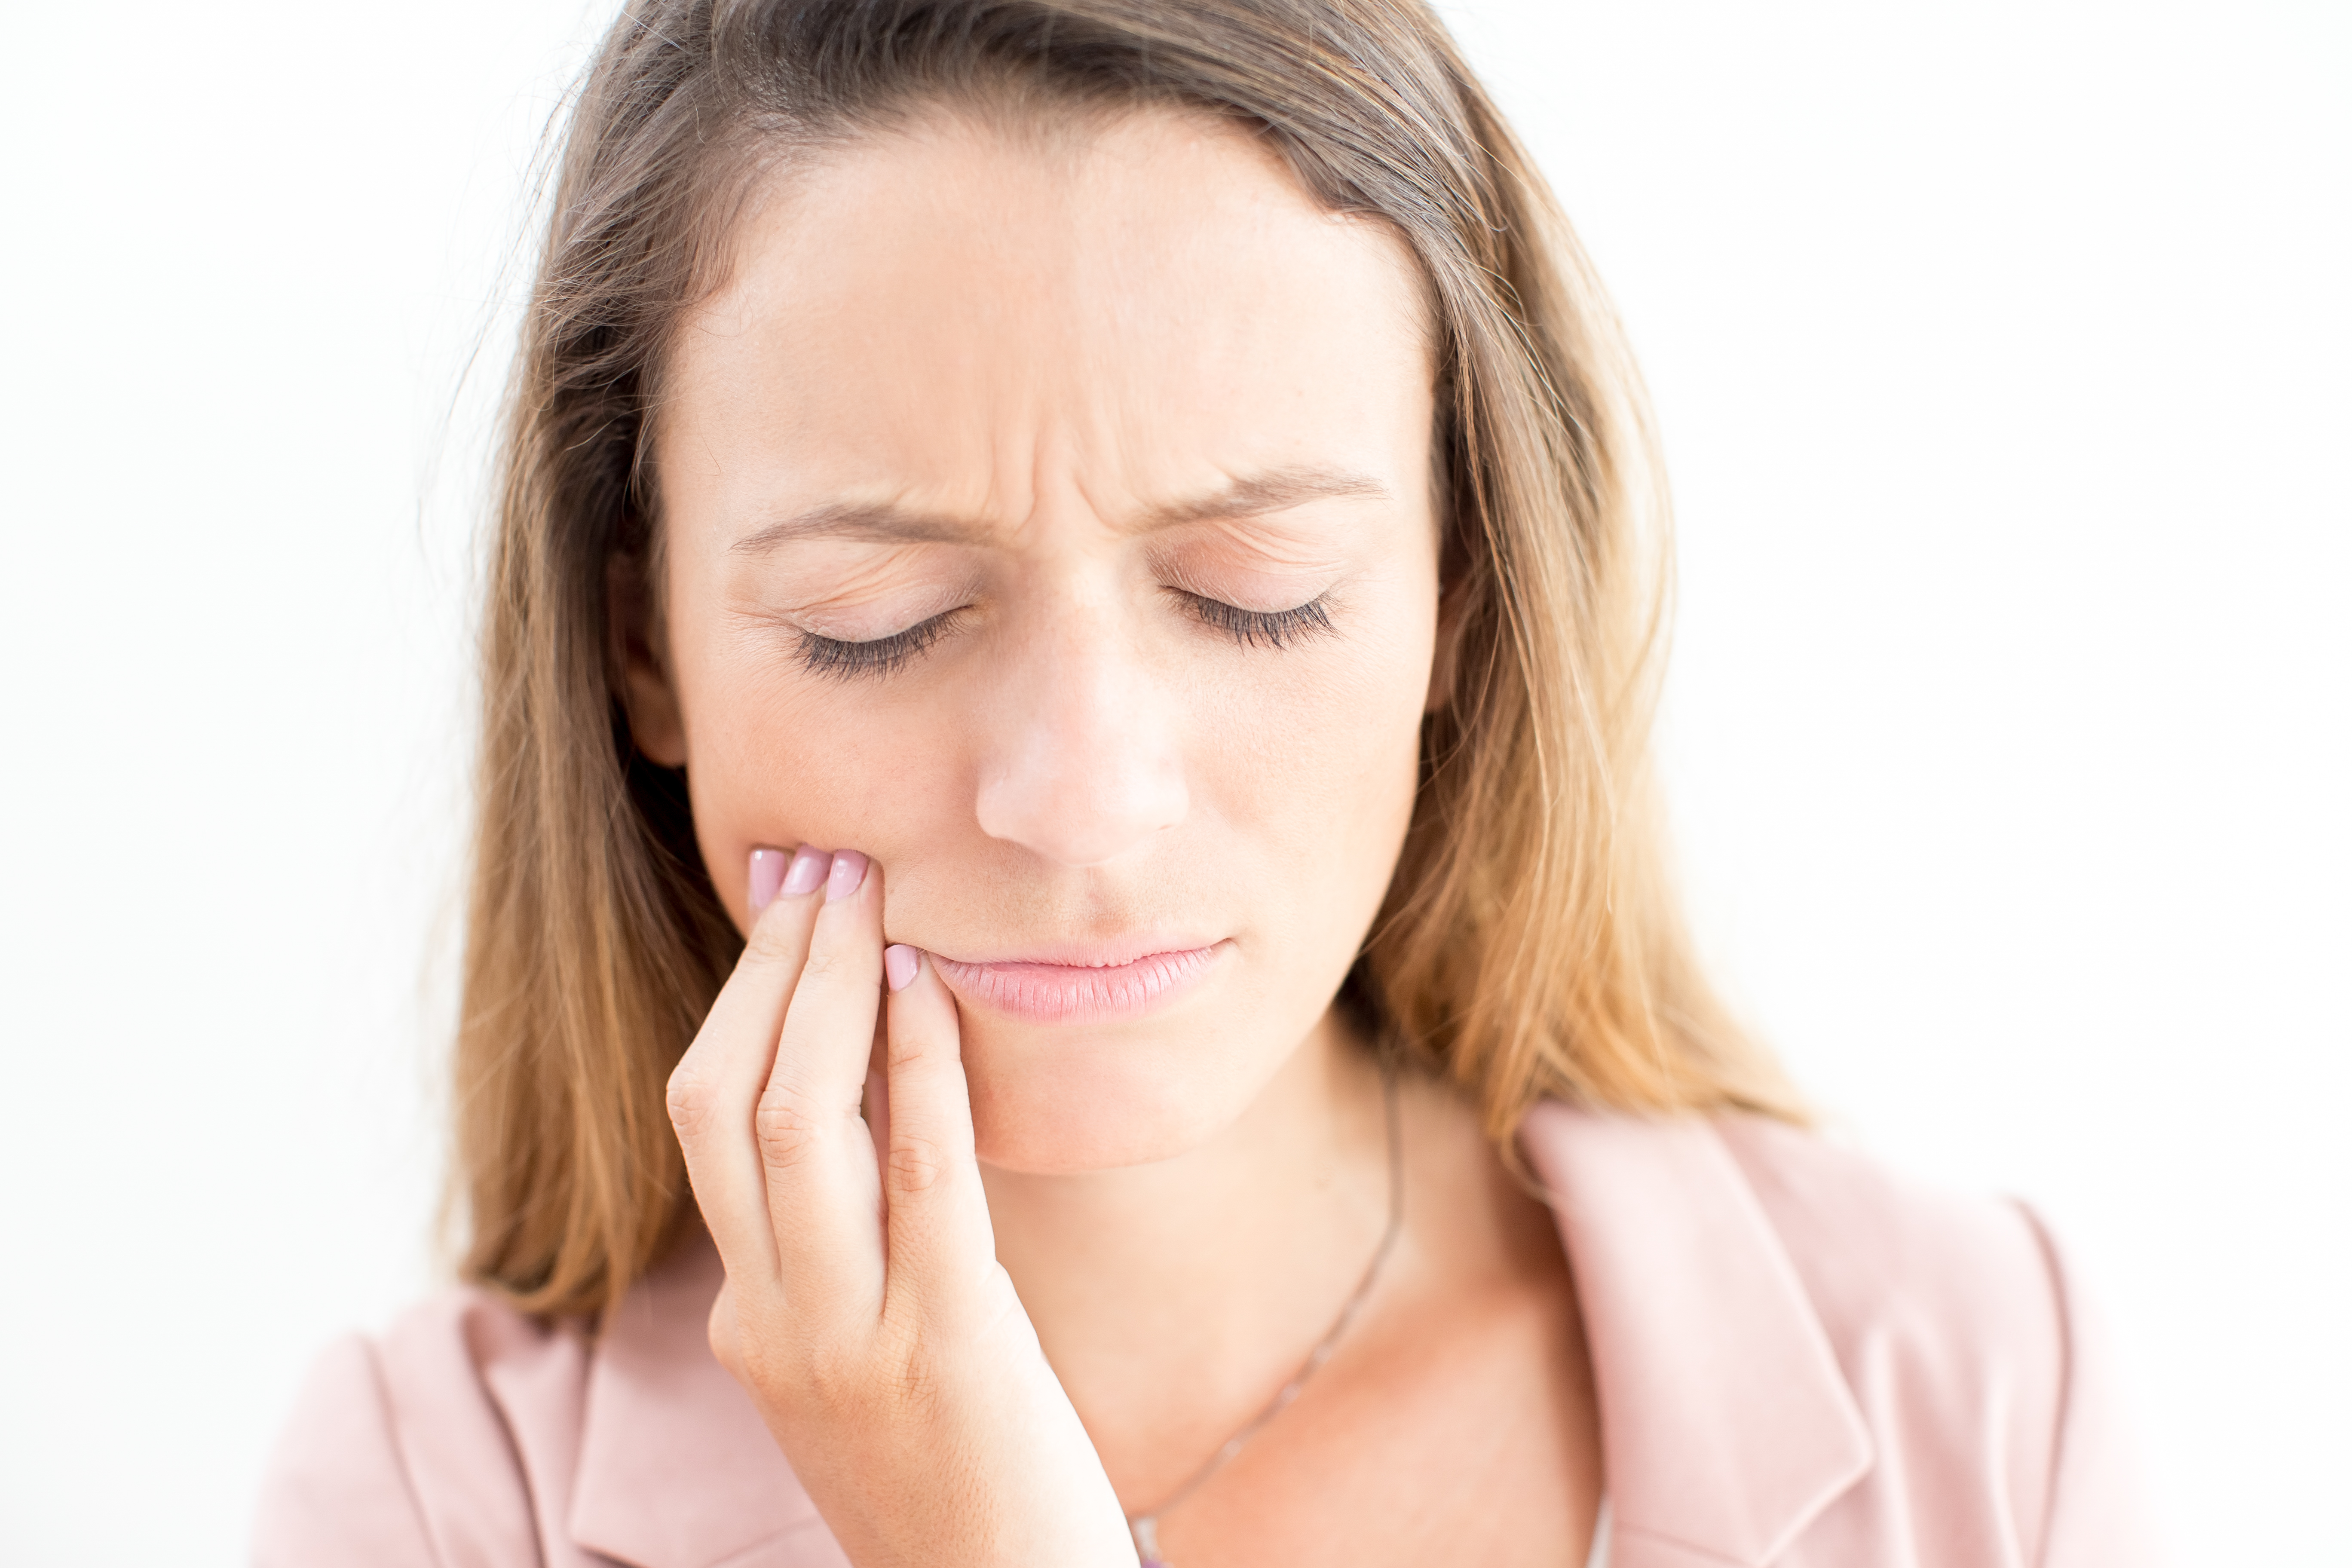 民众还需要定期检查牙齿（最好是6个月检查一次），这样做有助于让你的牙齿保持得更清洁、 更持久， 也能够防止出现疼痛等问题。-图取自freepik-